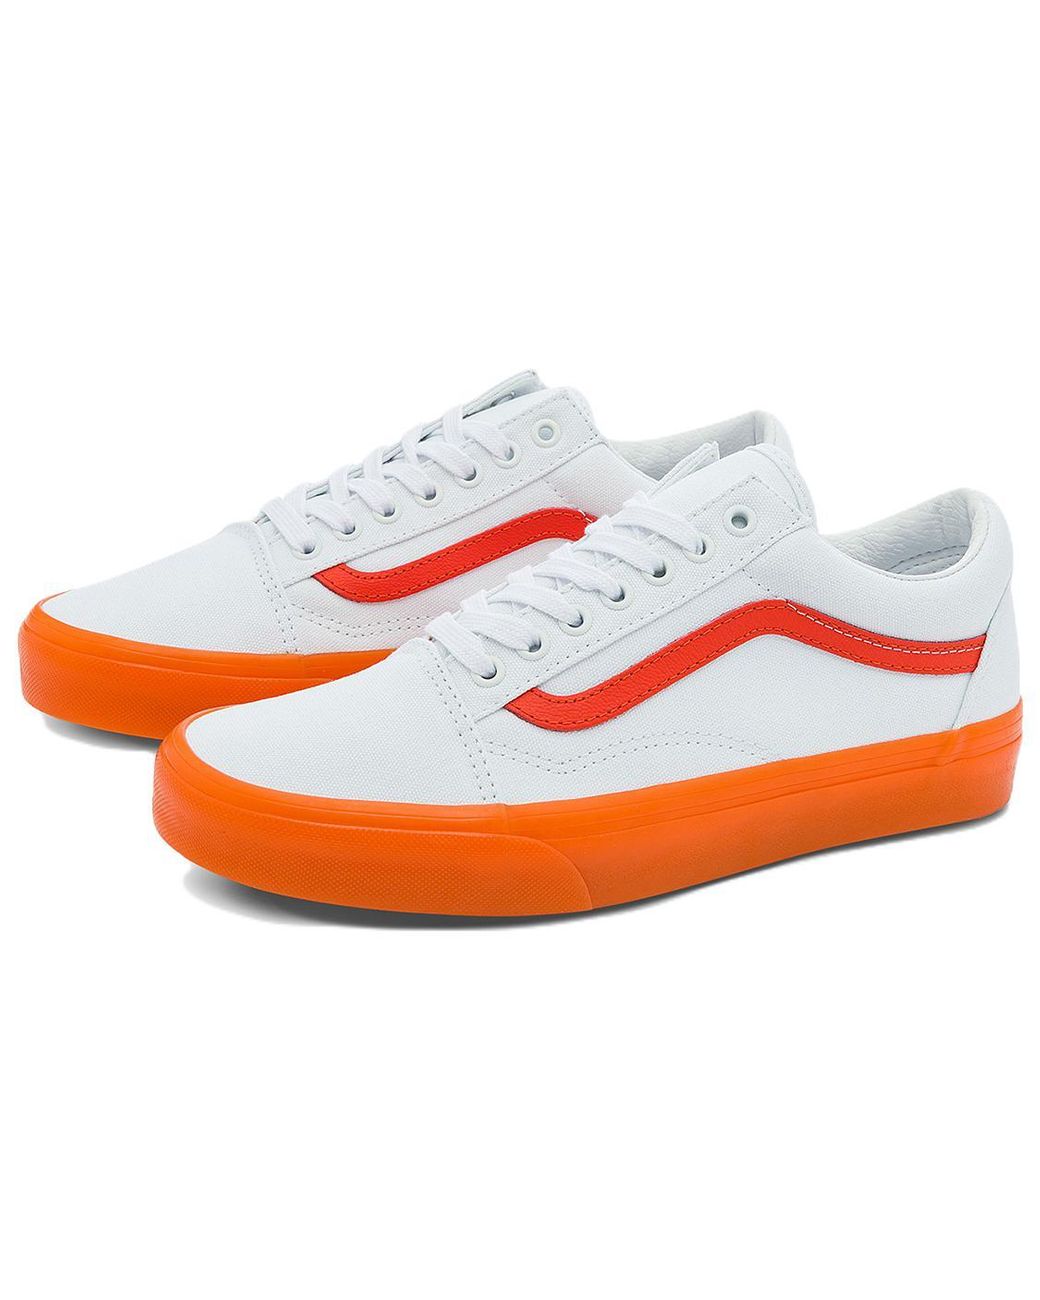 Vans Old Skool Casual Low Top Skate Shoes Small Orange Side Stripe | Lyst